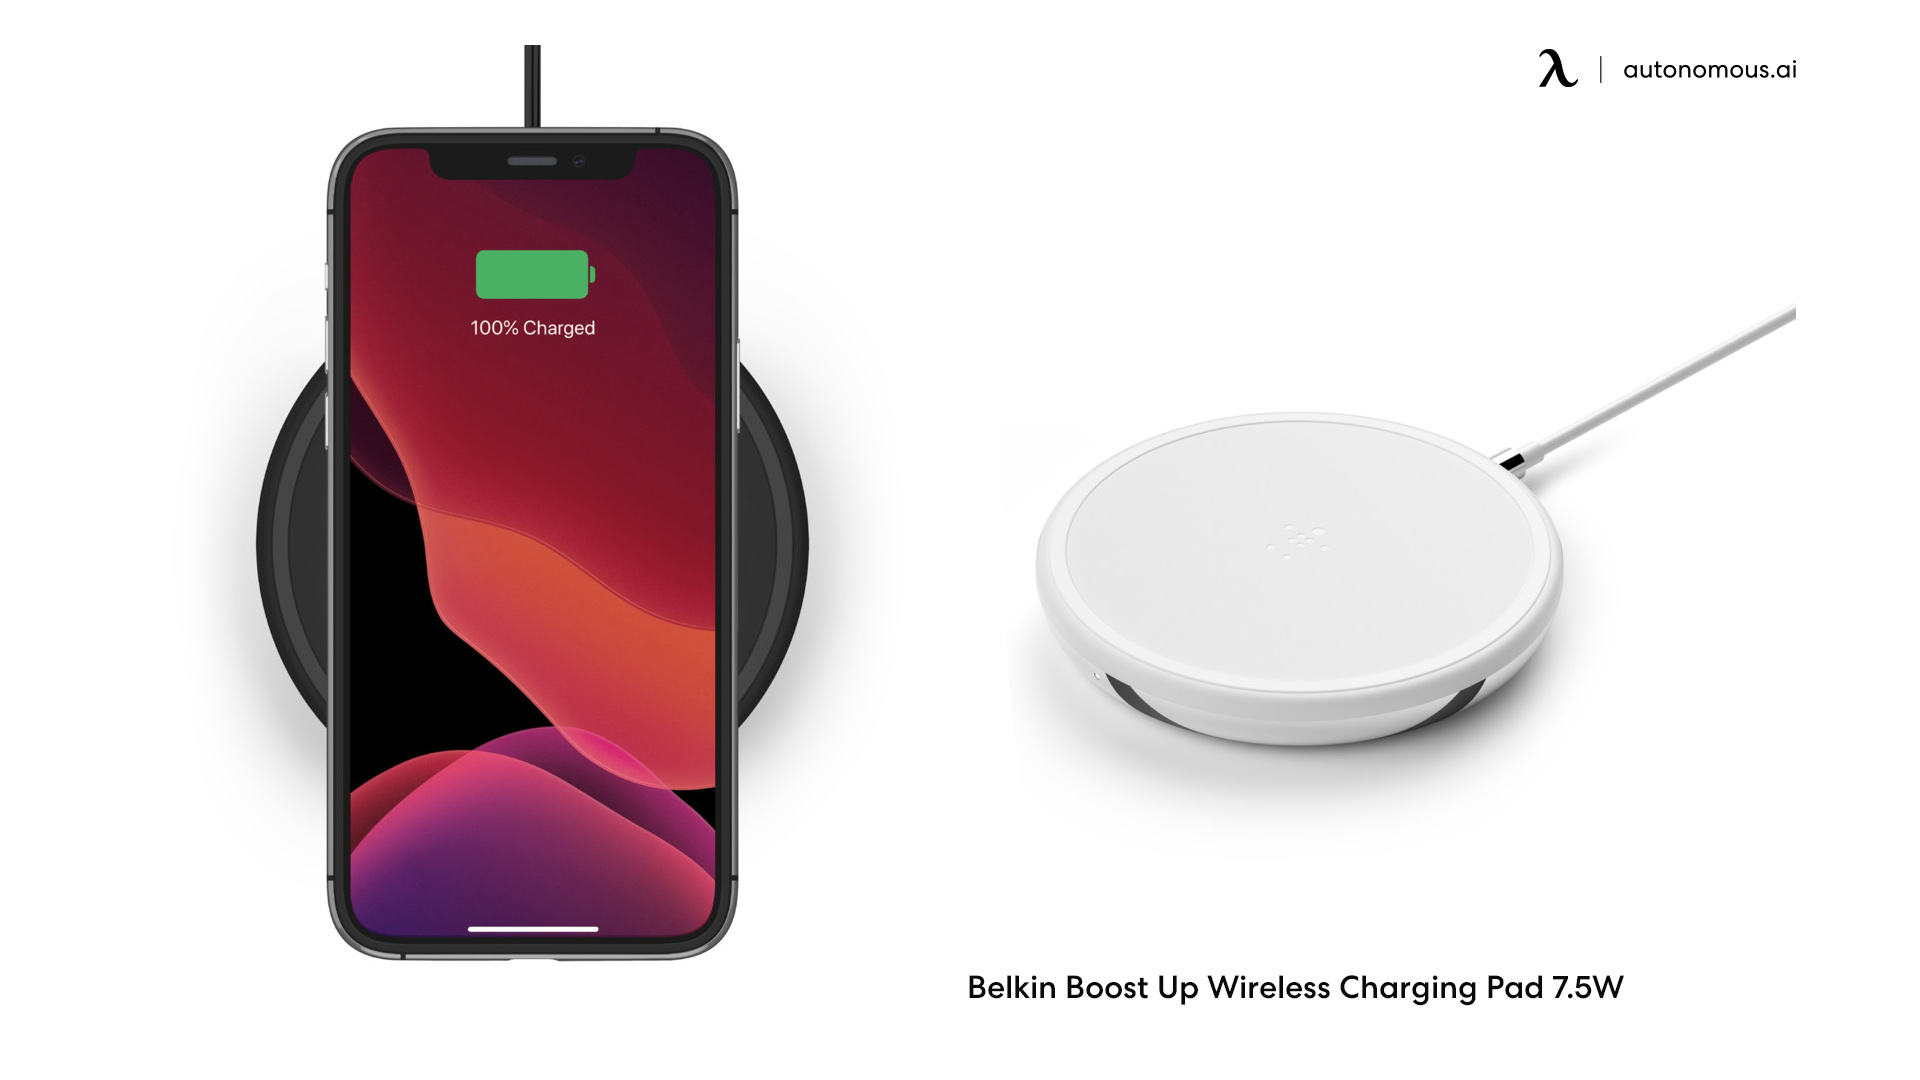 Belkin Boost Up Wireless Charging Pad 7.5W